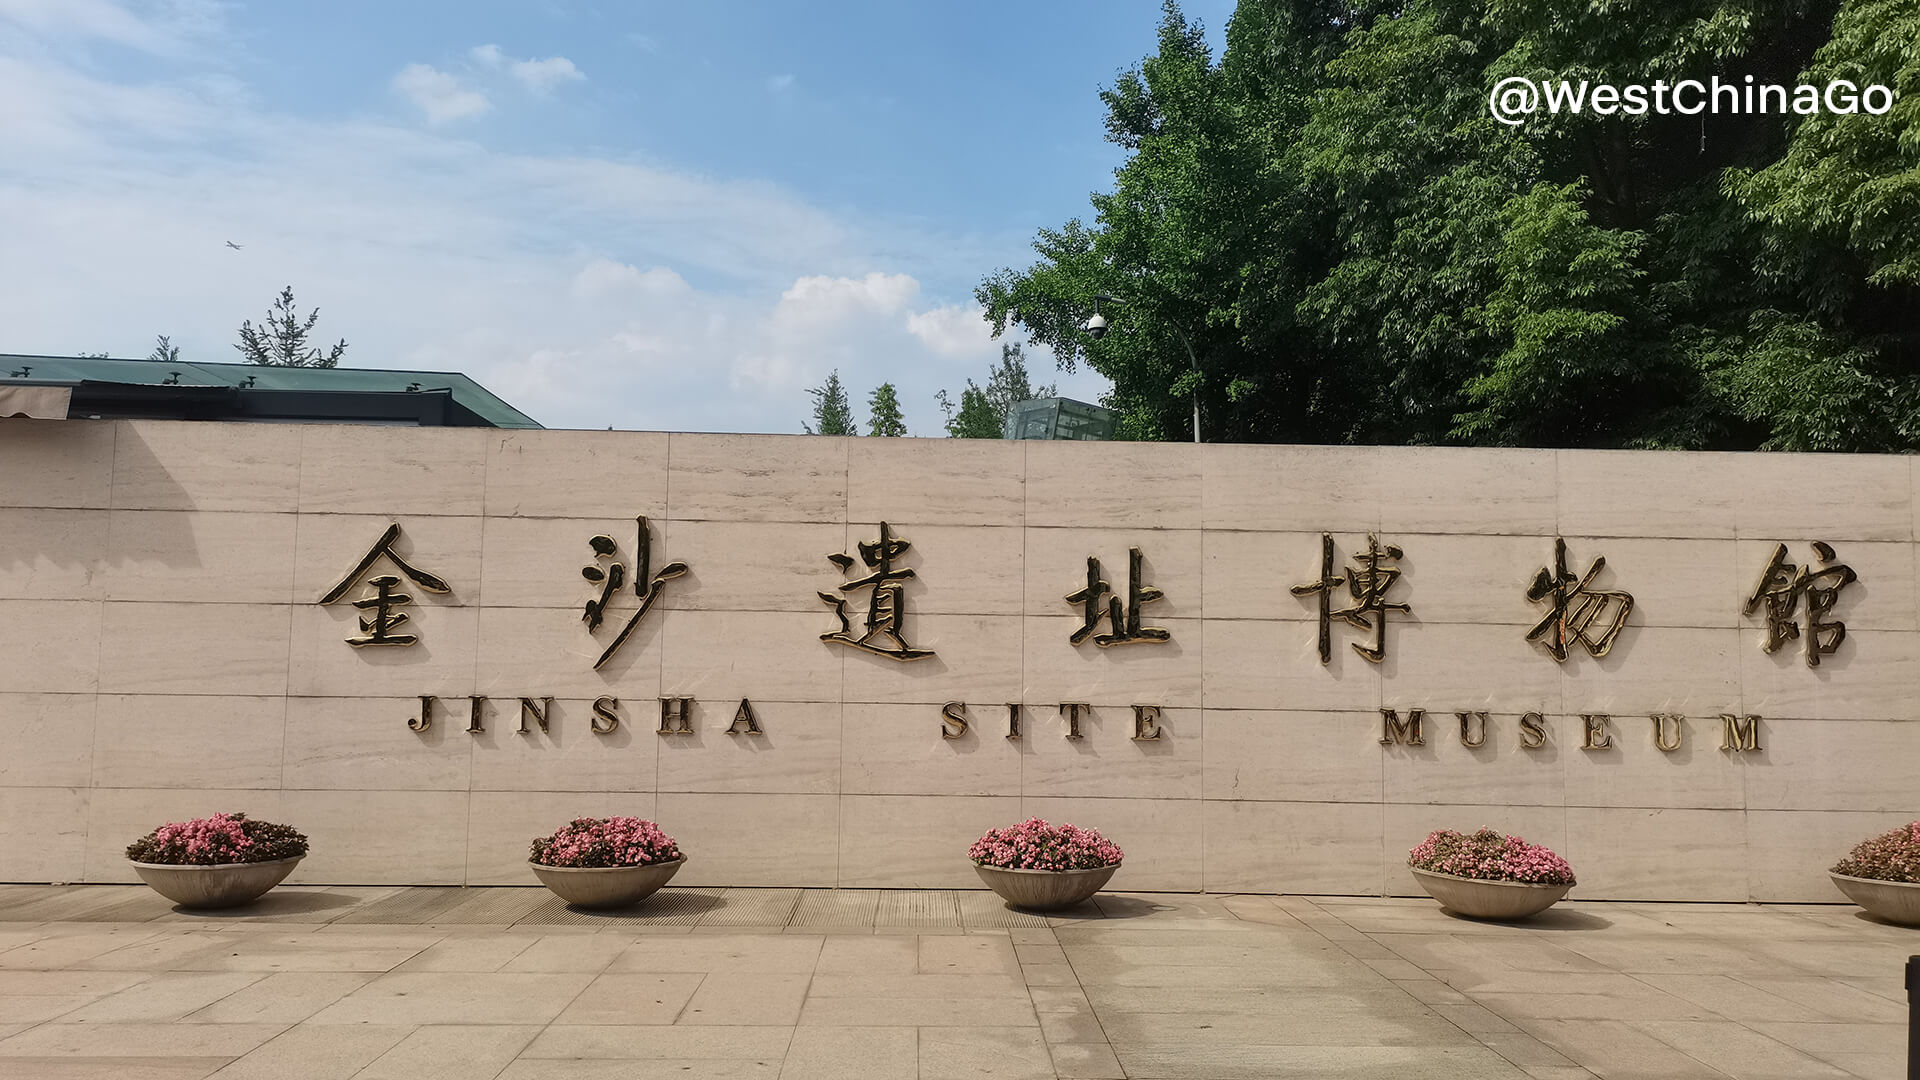 Chengdu Jinsha Site Museum